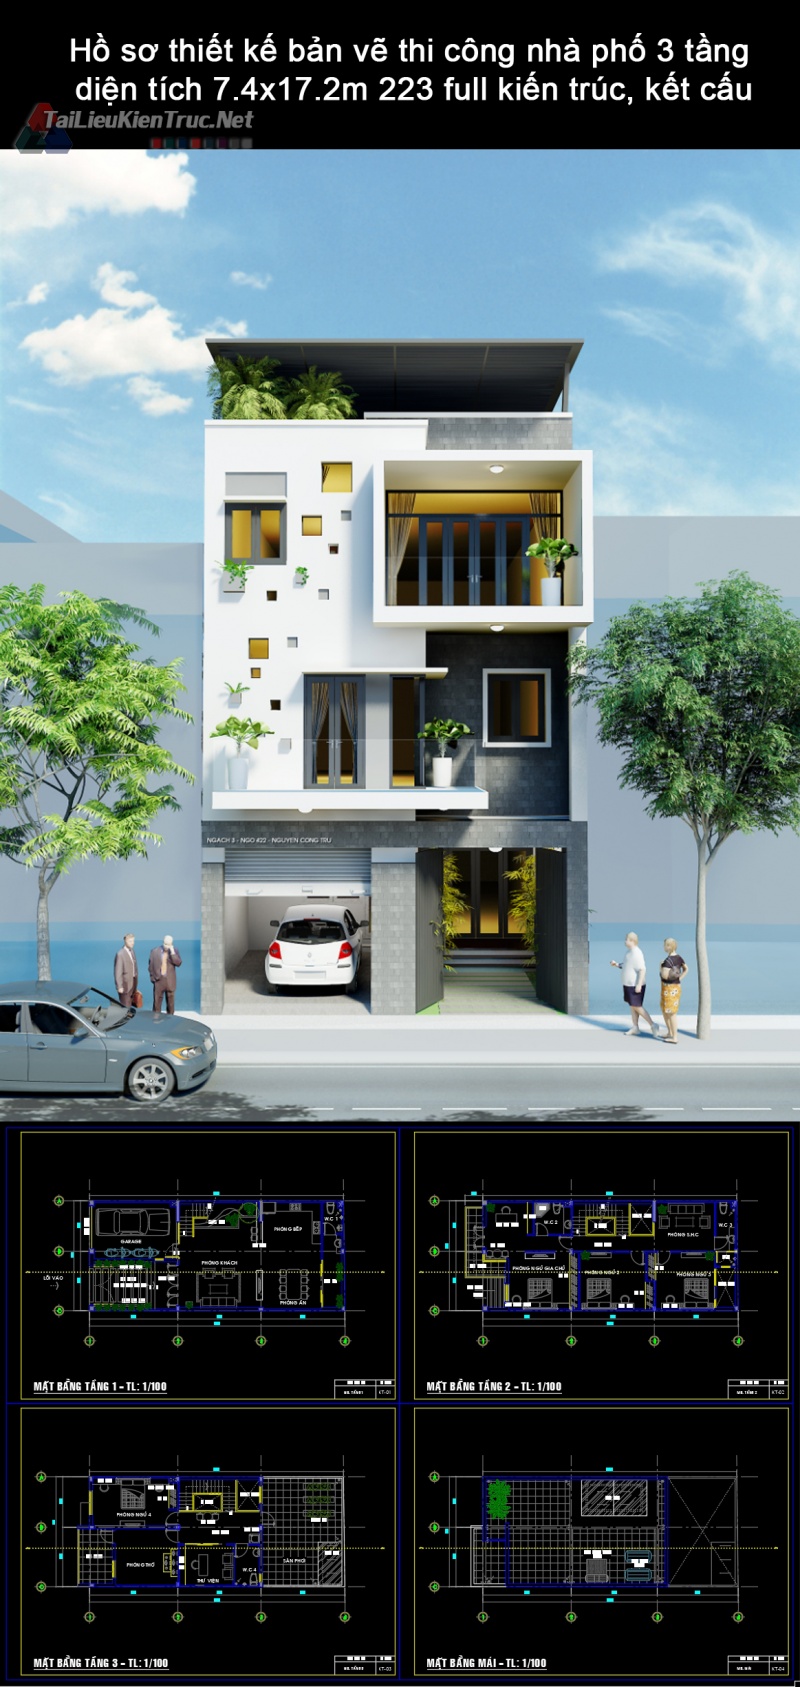 Hồ sơ thiết kế bản vẽ thi công nhà phố 3 tầng diện tích 7.4x17.2m 223 full kiến trúc, kết cấu